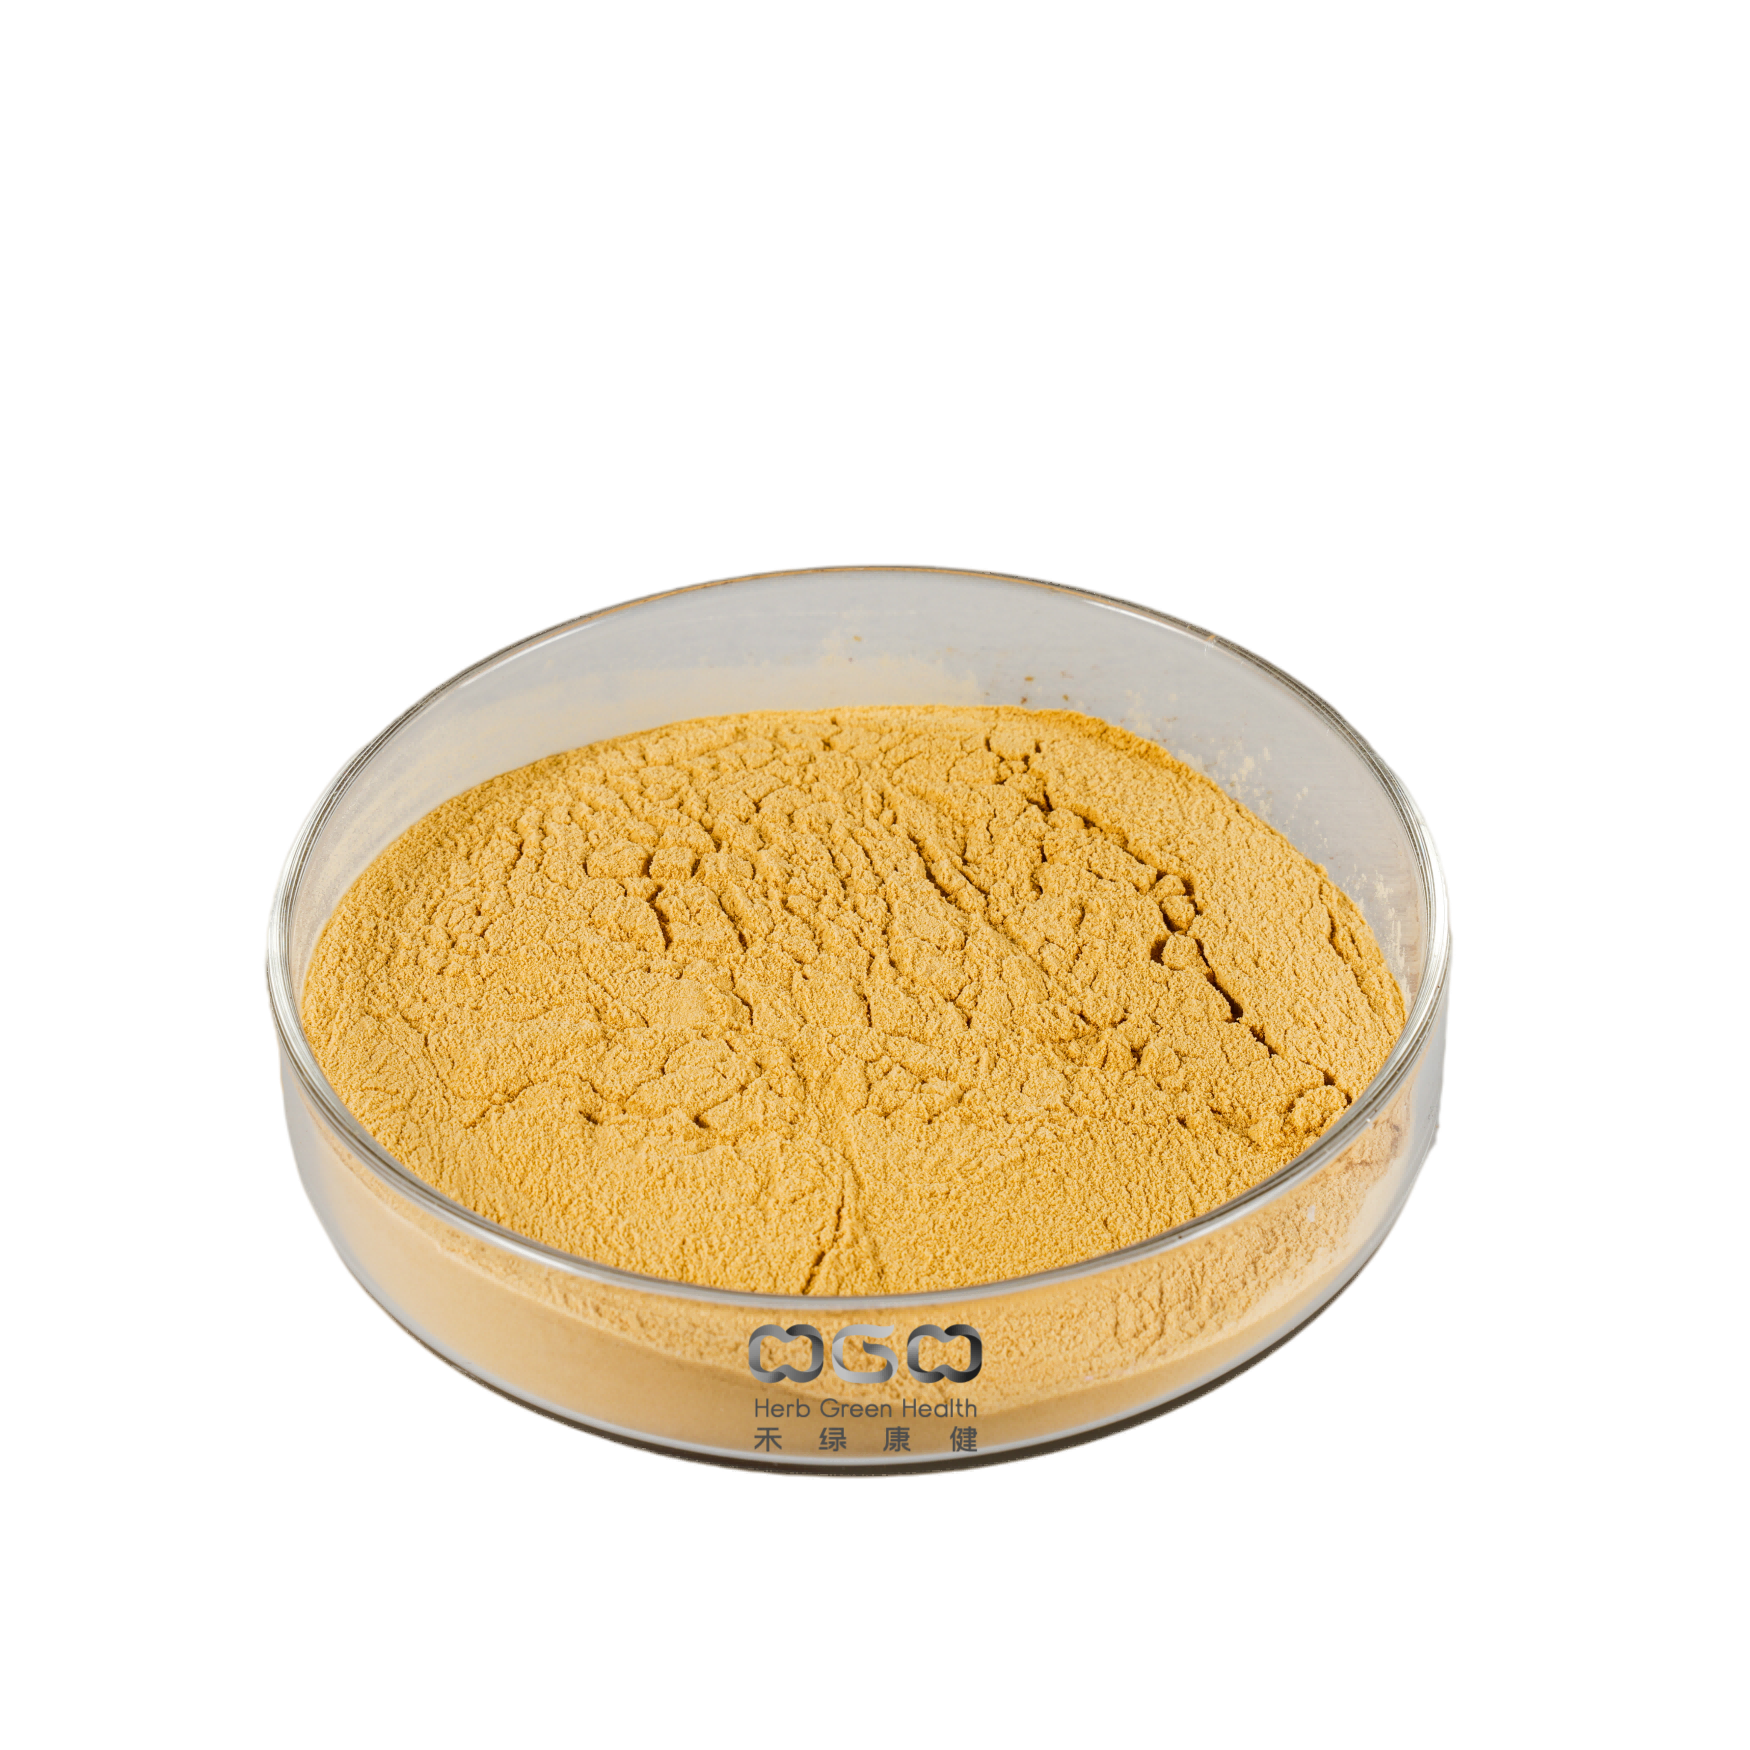 Zitronenmelisse-Extrakt Verhältnis 4:1 Rosmarinsäure 2-10% zur Förderung der Verdauung